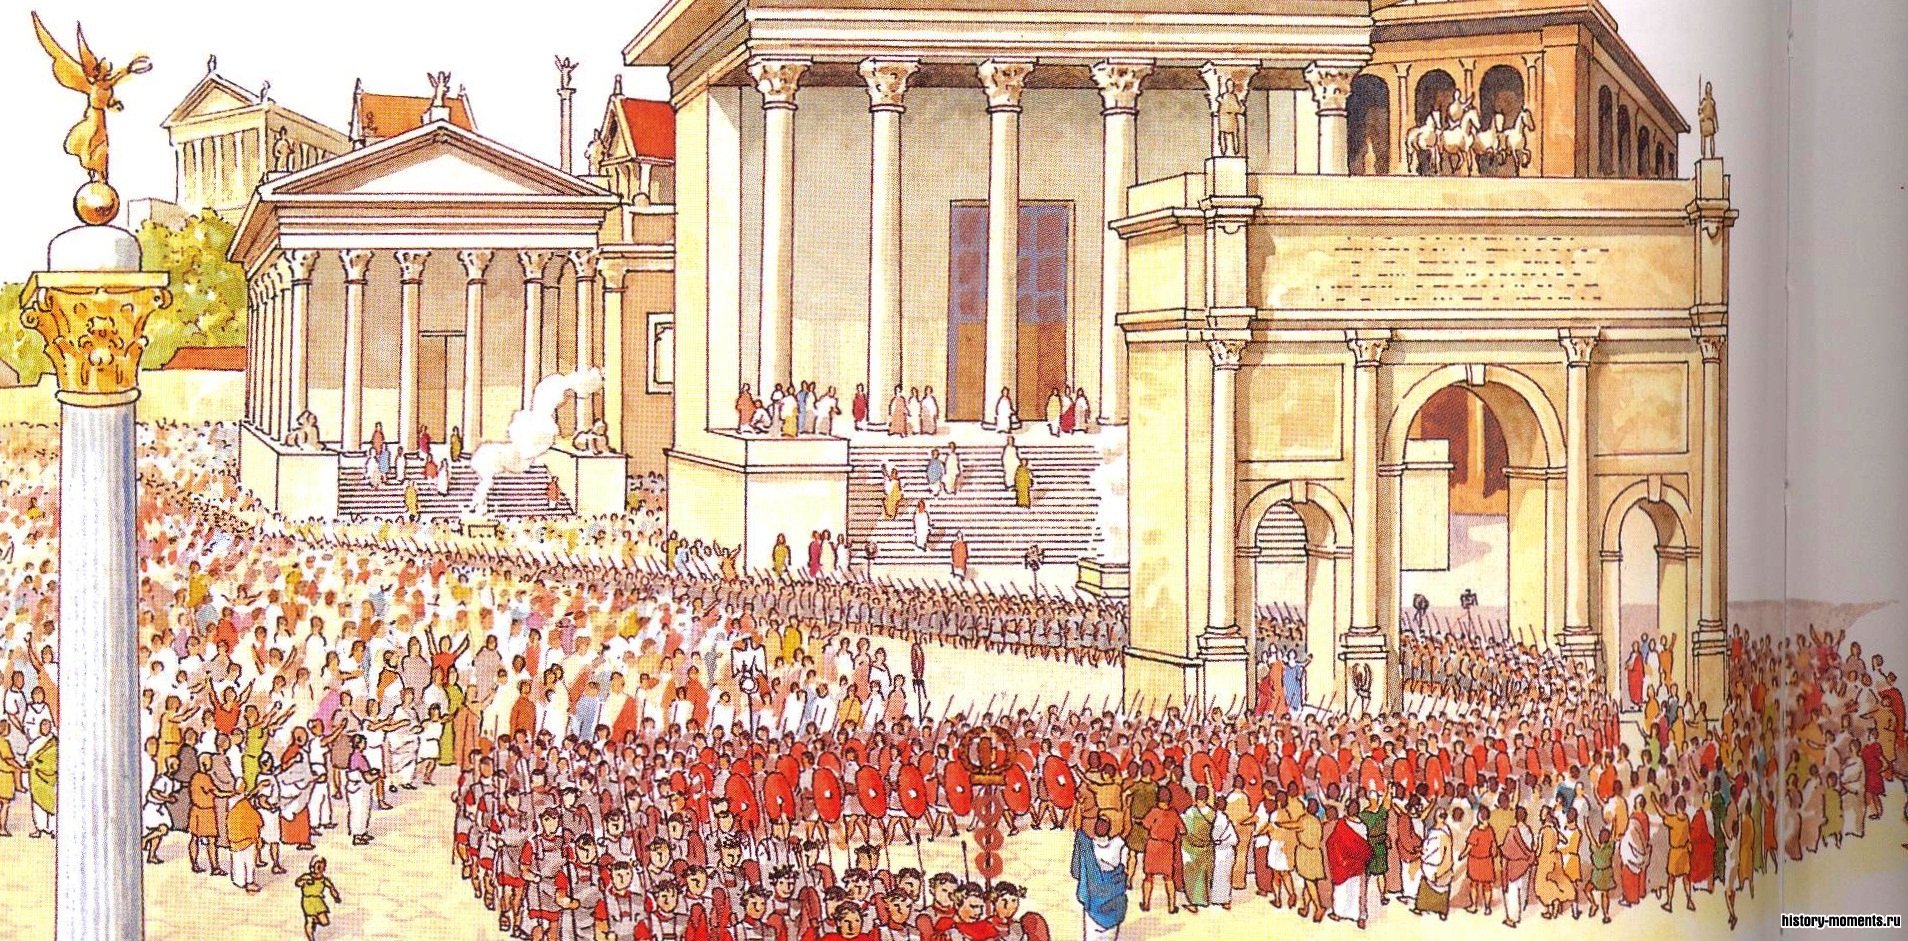 Великим римским полководцам предоставлялся триумф - торжественный въезд в столицу в ознаменование их побед.